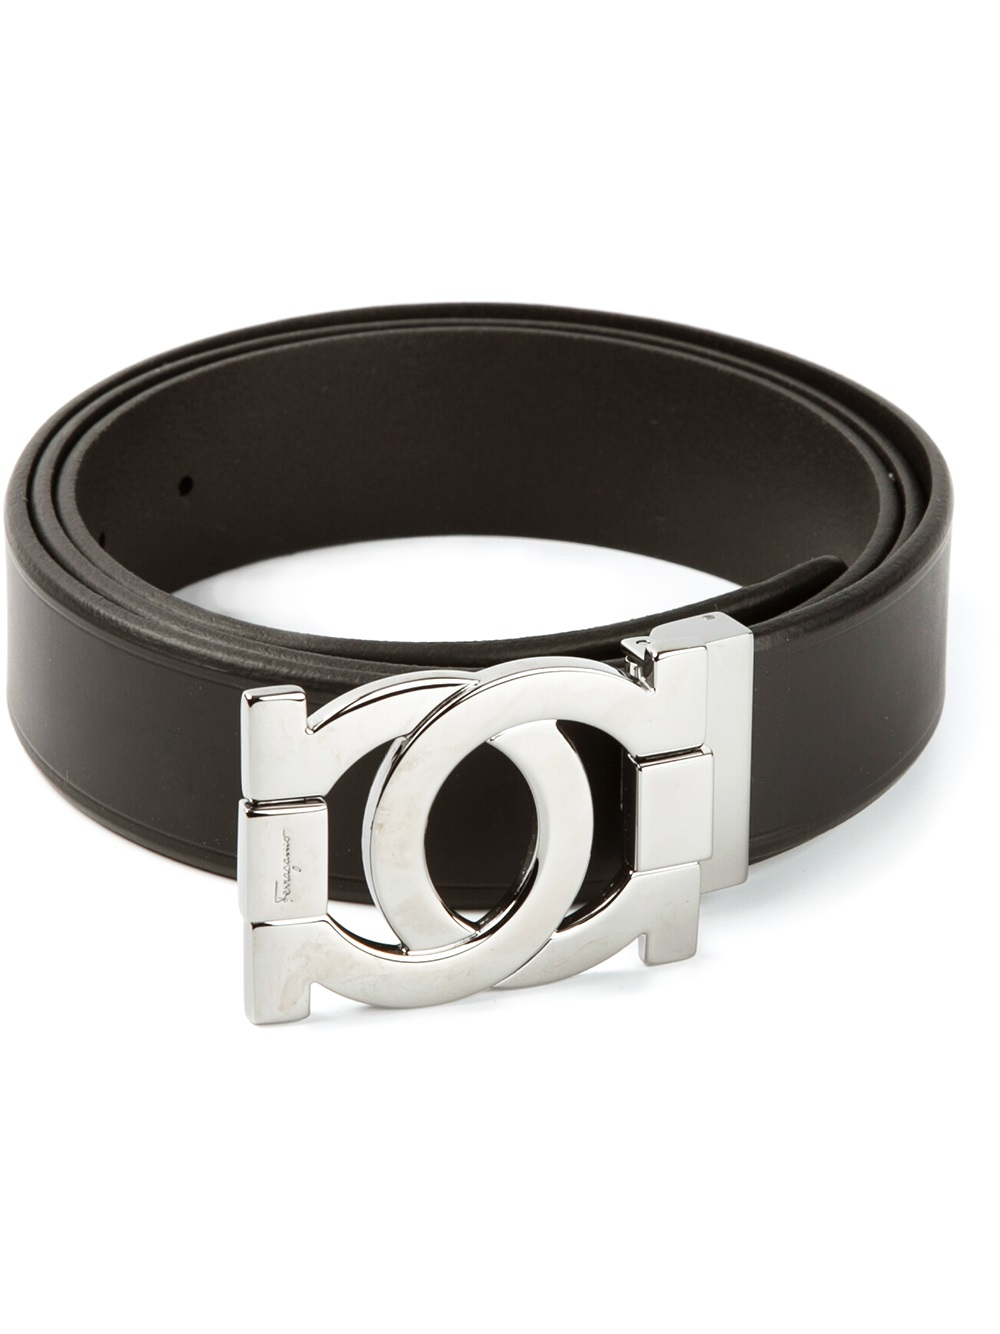 Lyst - Ferragamo Logo Buckle Belt in Black for Men